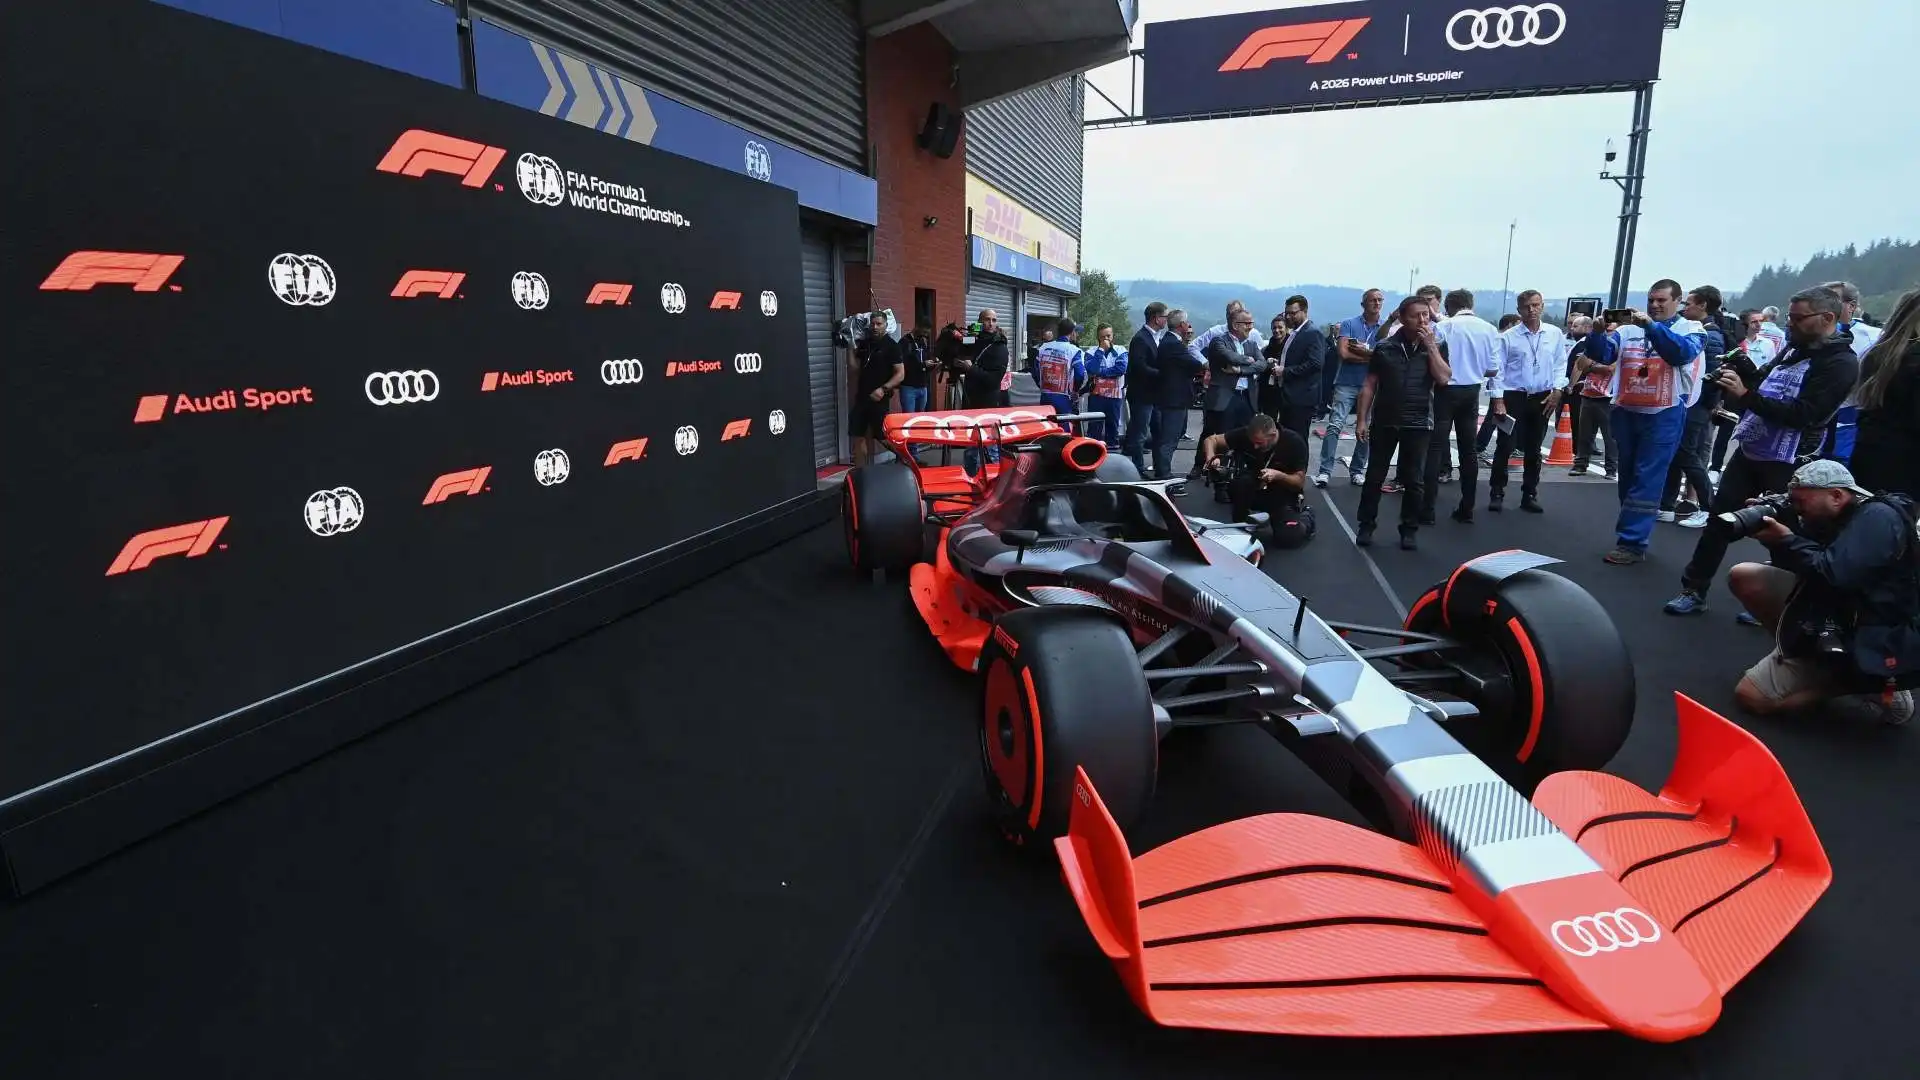 "Il motorsport è parte integrante del nostro DNA e la Formula 1 è sia un palcoscenico globale che un'eccezionale sfida per sperimentare nuove tecnologie" ha detto l'amministratore delegato di Audi, Markus Deusmann